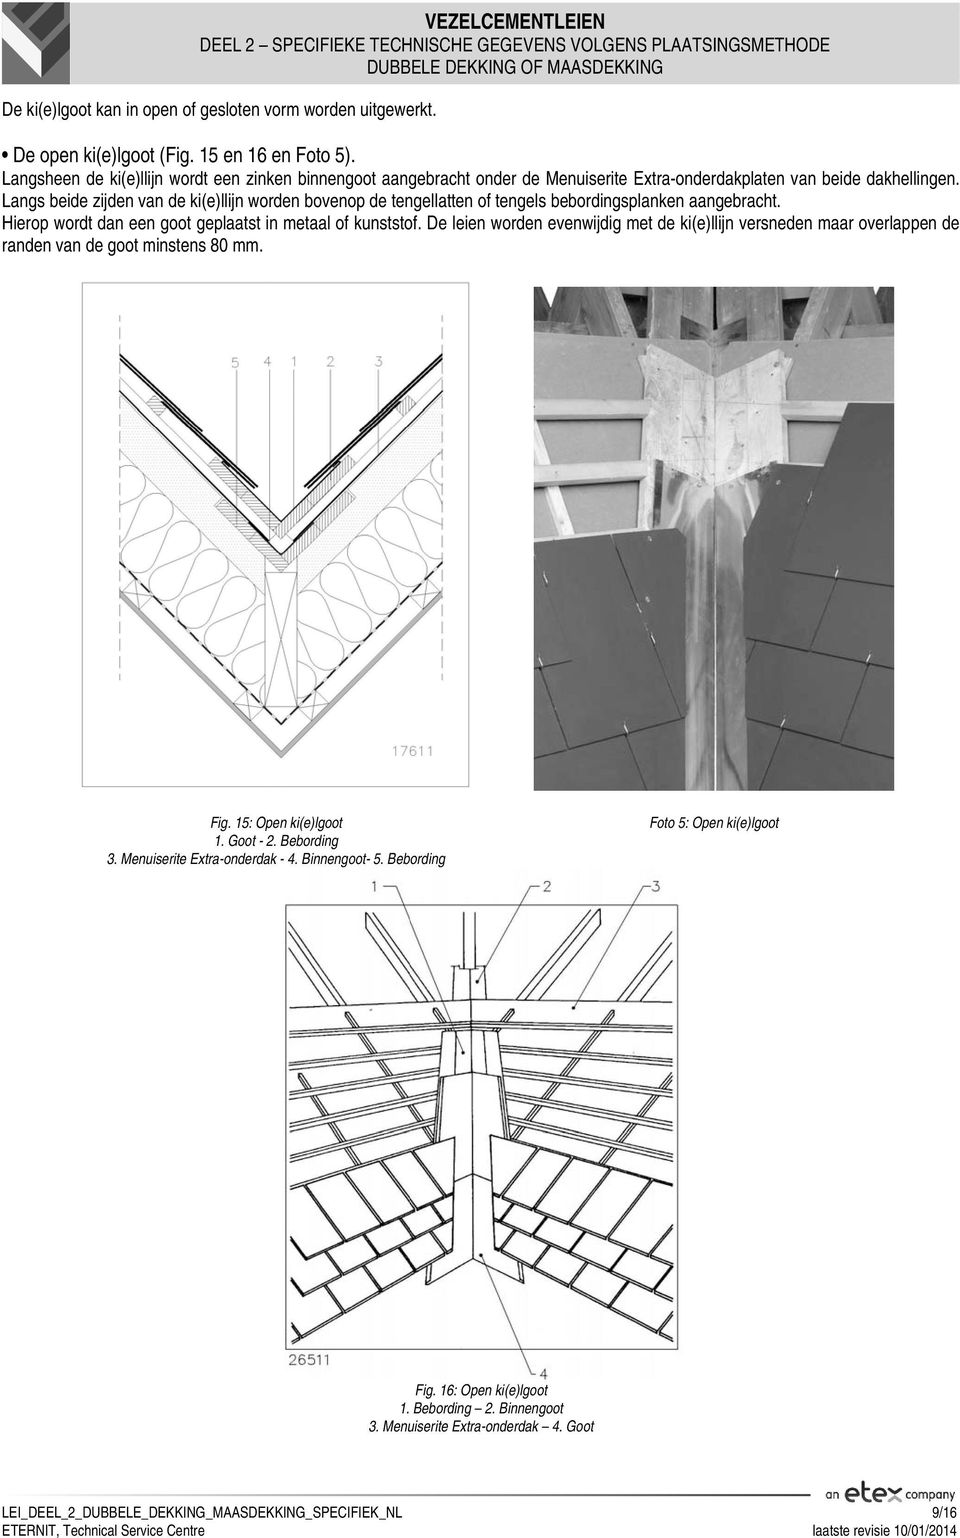 Langs beide zijden van de ki(e)llijn worden bovenop de tengellatten of tengels bebordingsplanken aangebracht. Hierop wordt dan een goot geplaatst in metaal of kunststof.